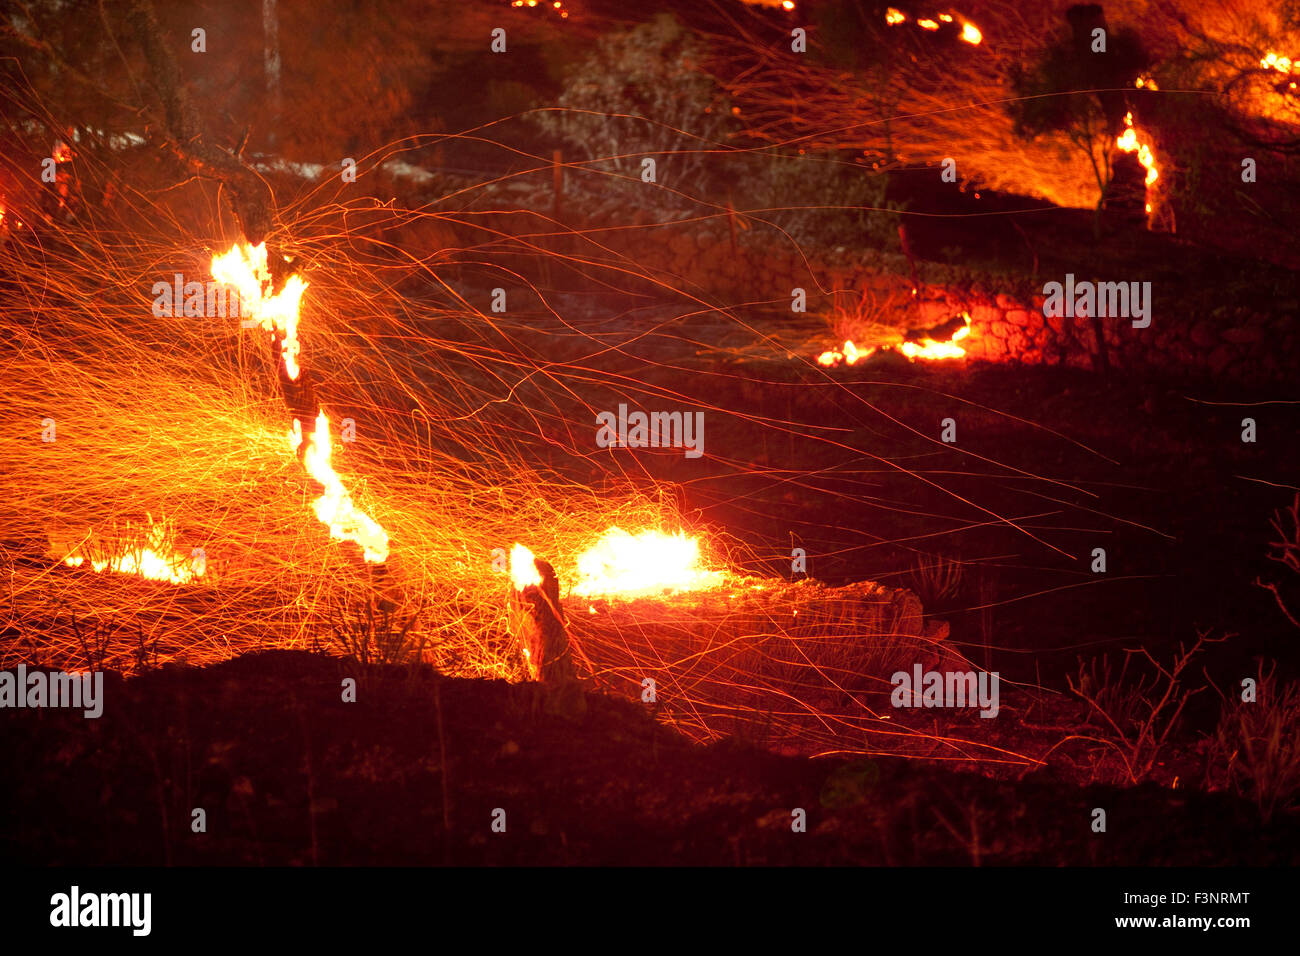 Streifen von Funkenflug Feuer und brennenden Baum Zweige Afterglow in einer verheerenden Nachtansicht Platy Dorf brennenden Website. Stockfoto